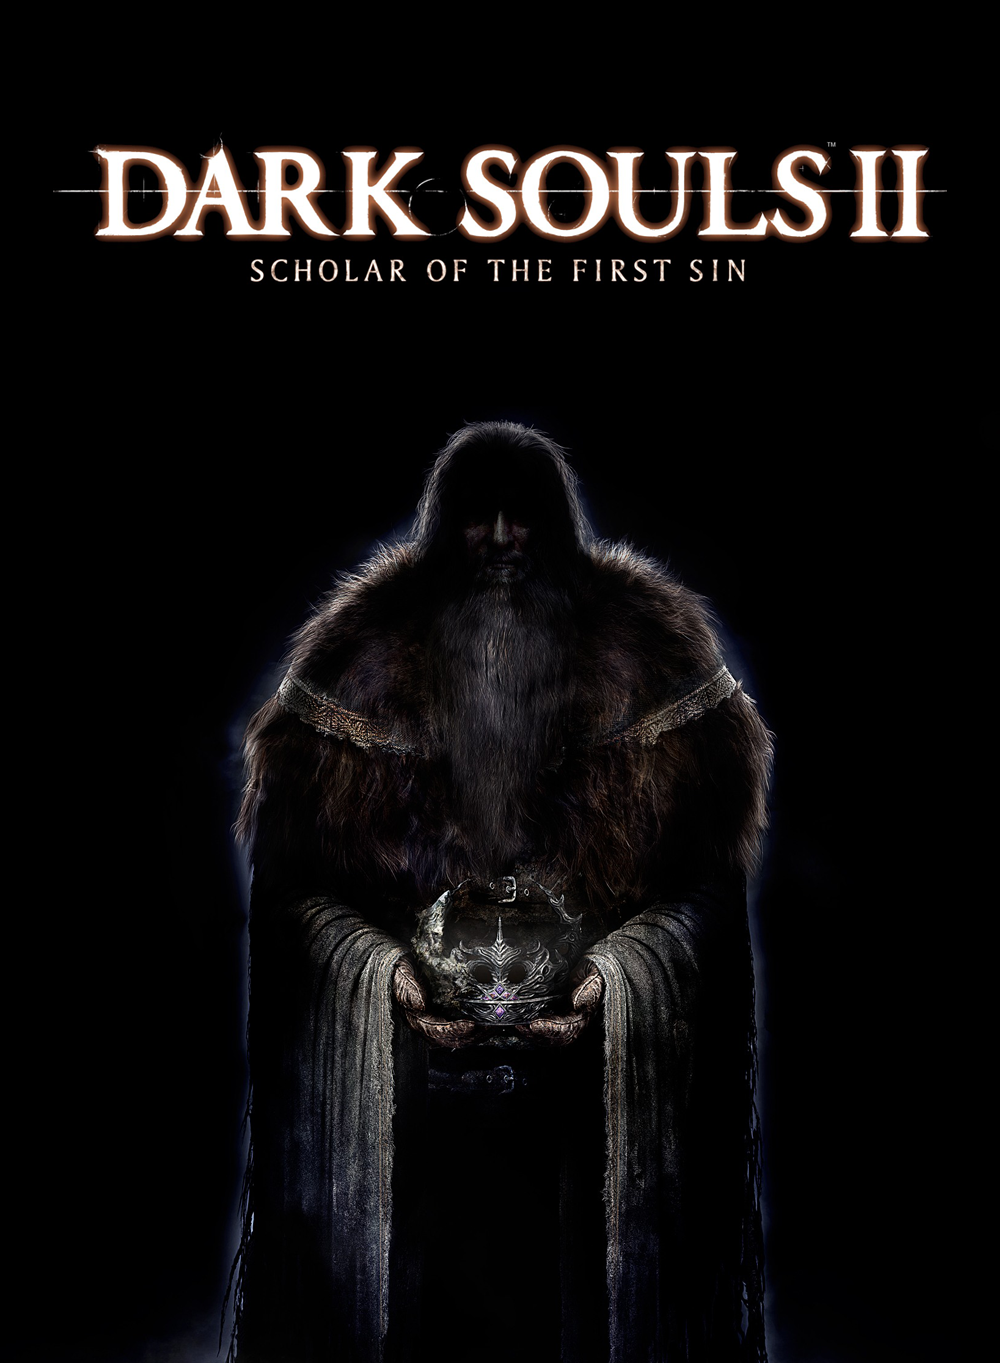 dark souls ii scholar of the first sin download